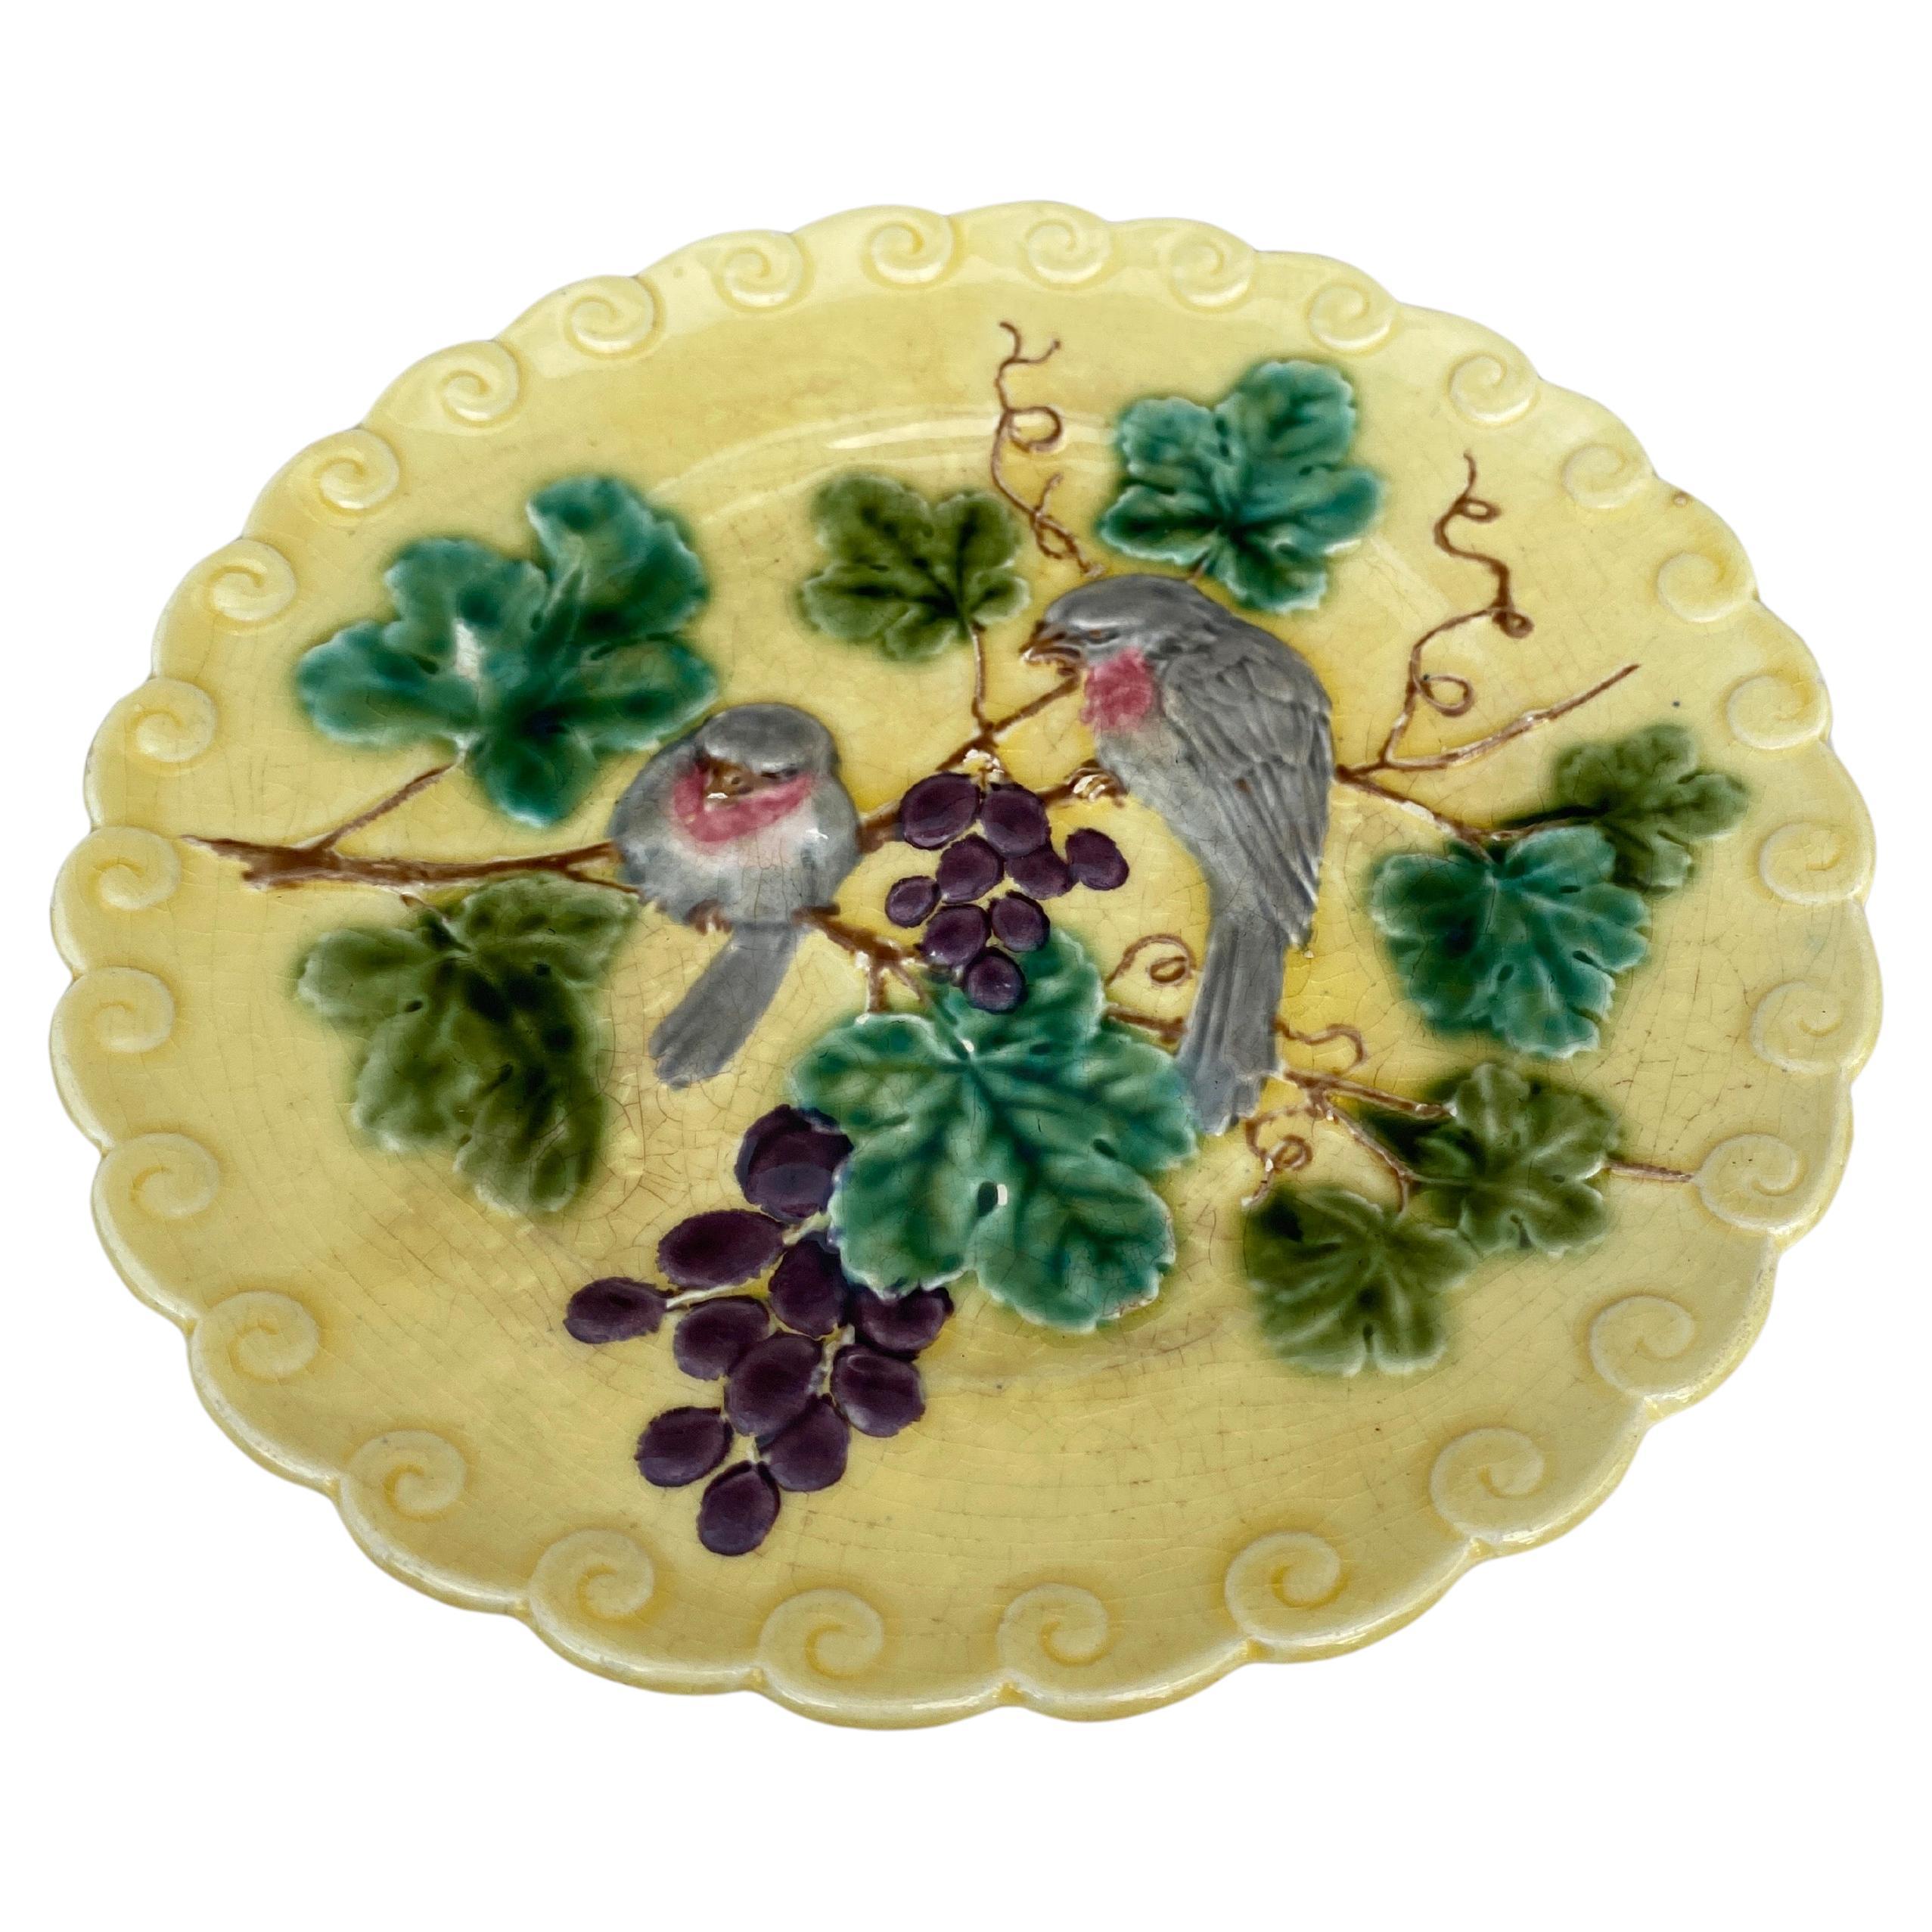 Assiette en majolique française à l'oiseau et aux raisins signée Sarreguemines, vers 1880.
Fond jaune très rare,